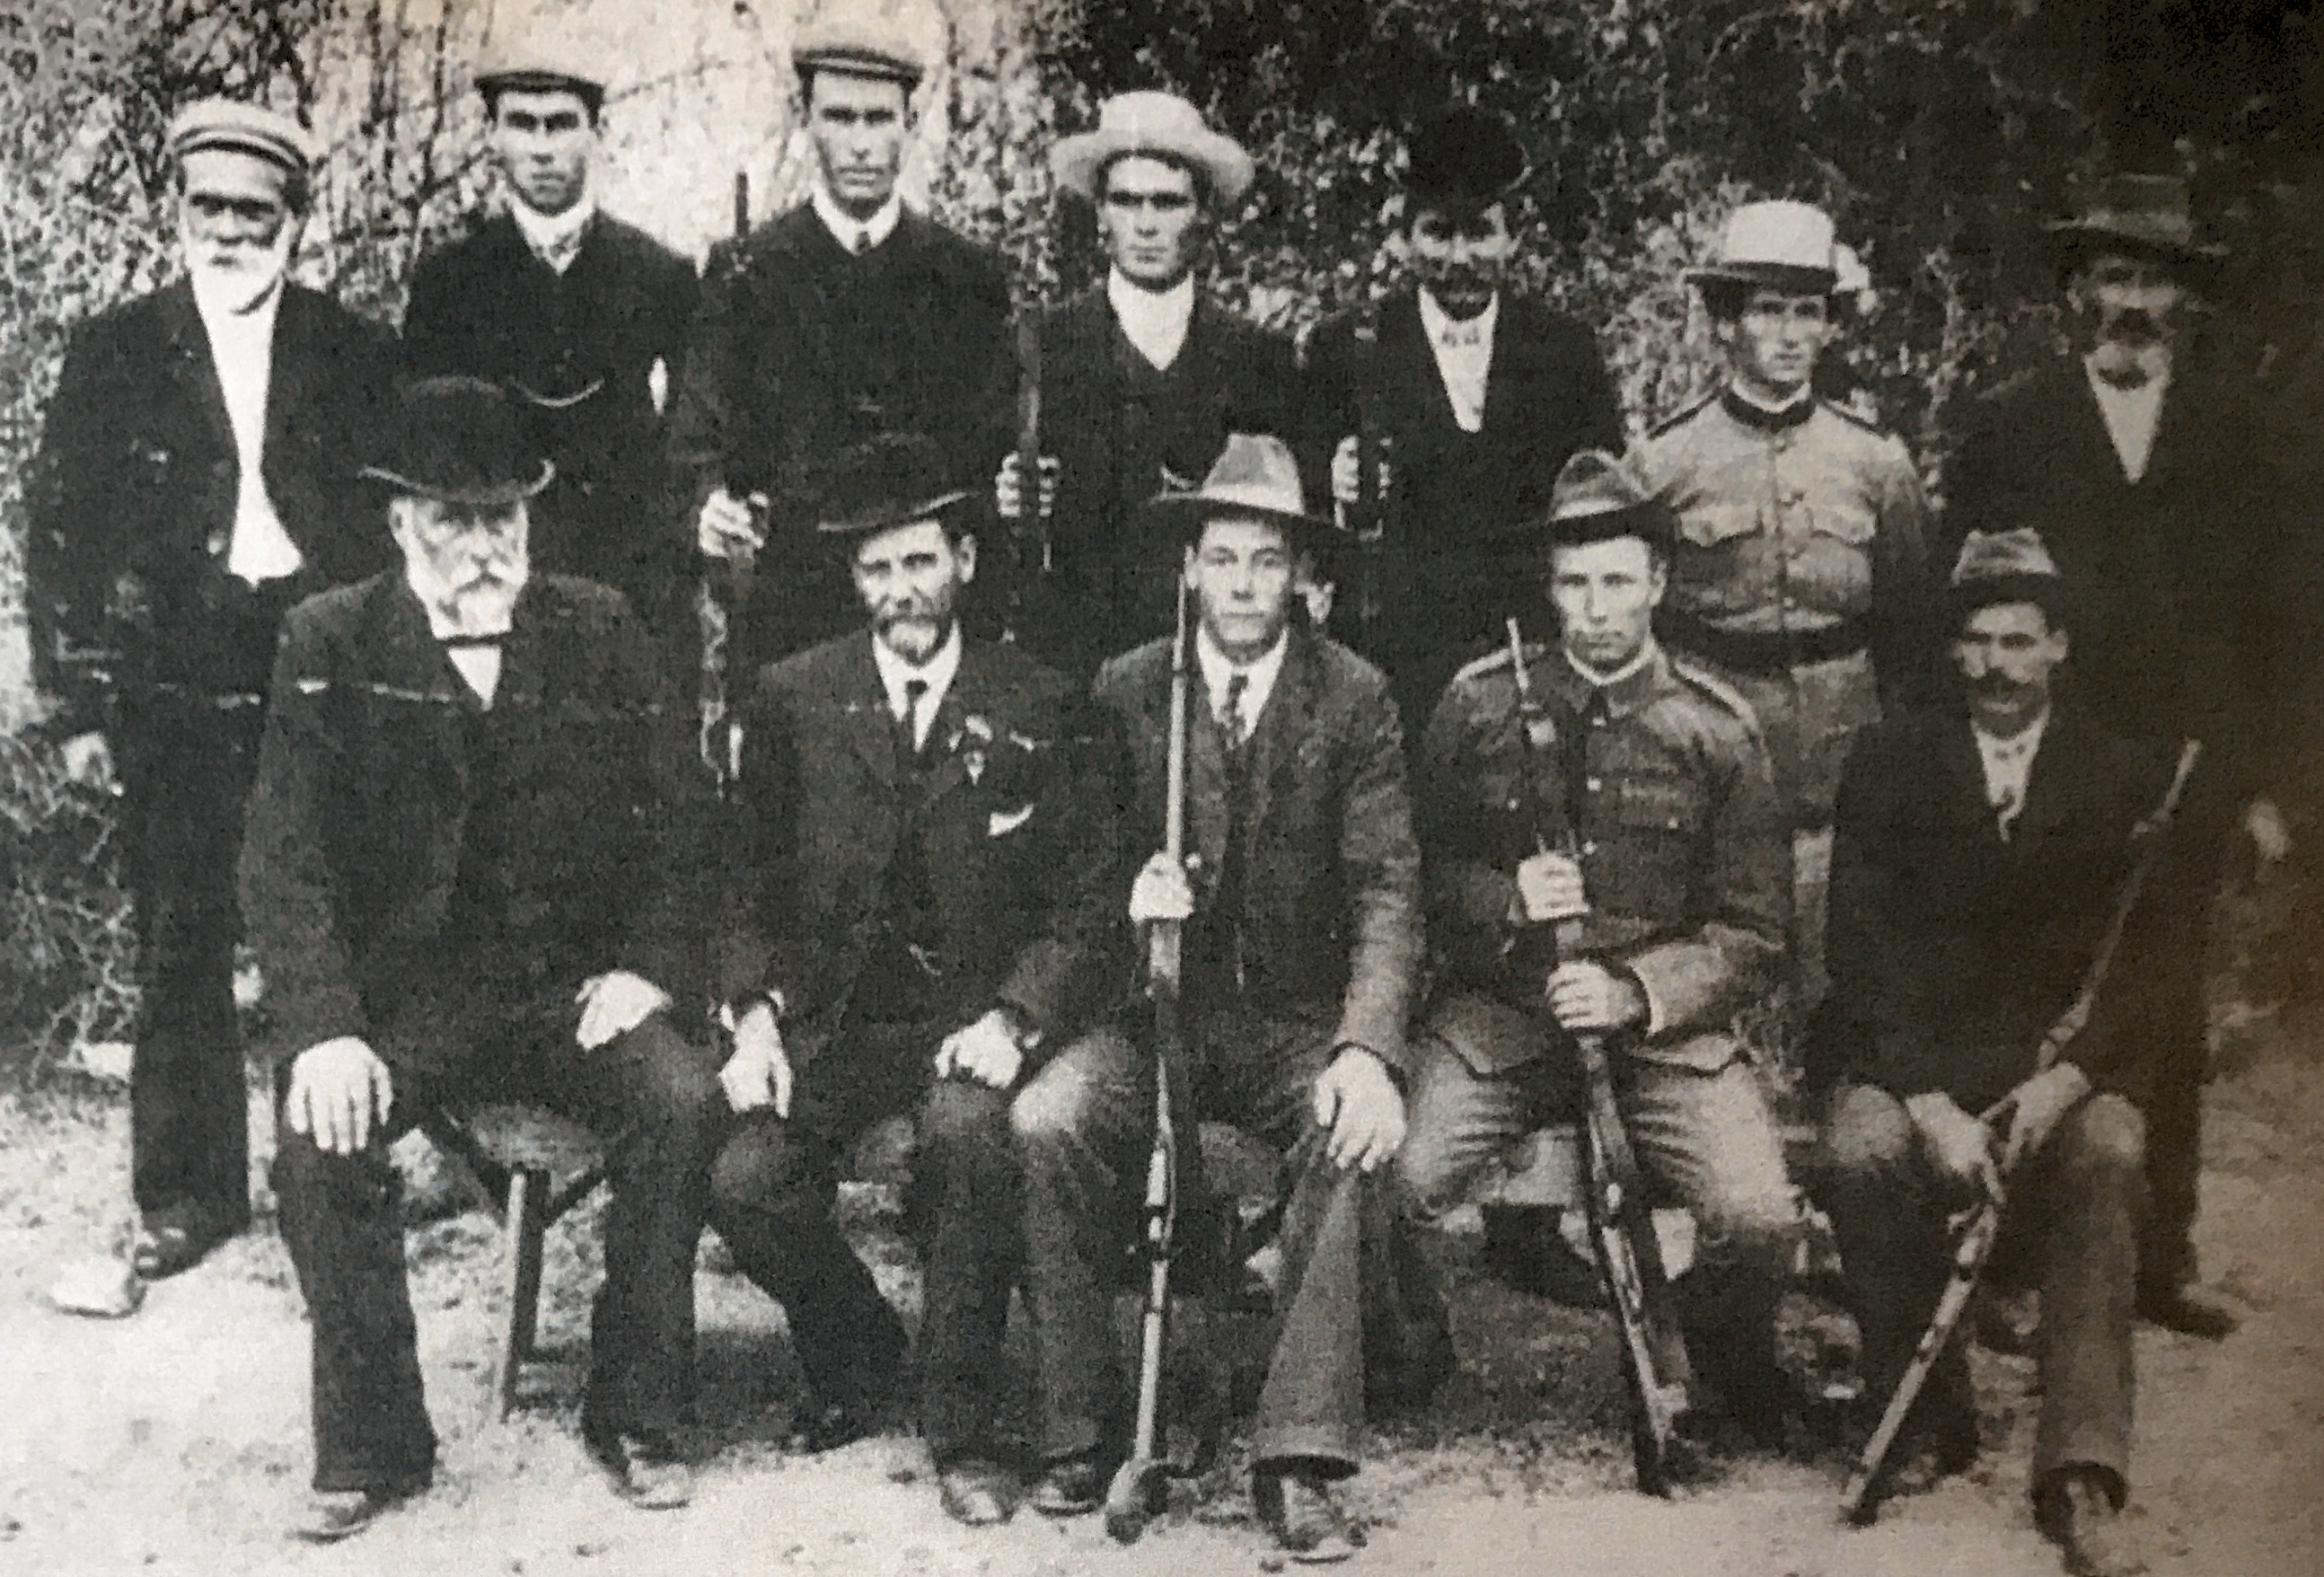 Dudley Rifle Club, 1905